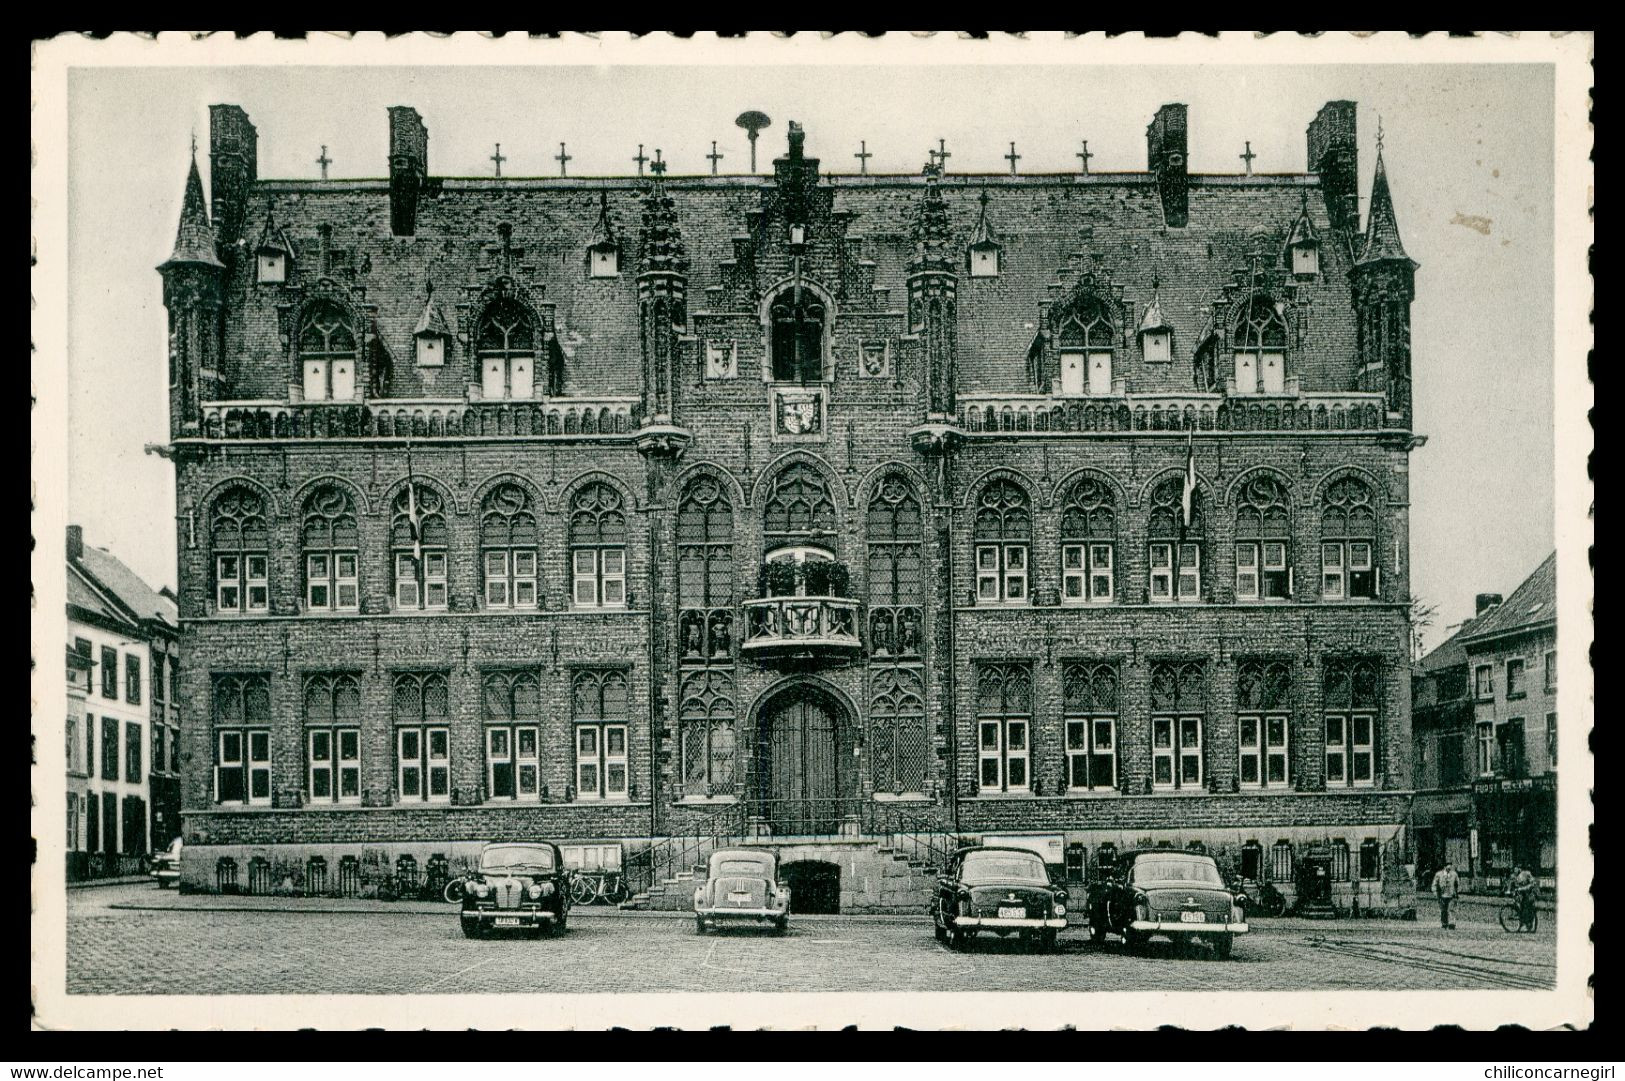 Cpsm - MOUSCRON - MOESKROEN - Hôtel De Ville - Vieilles Voitures - Animée - Edit. ROUSSELLE CASTEL - 1956 - Mouscron - Moeskroen